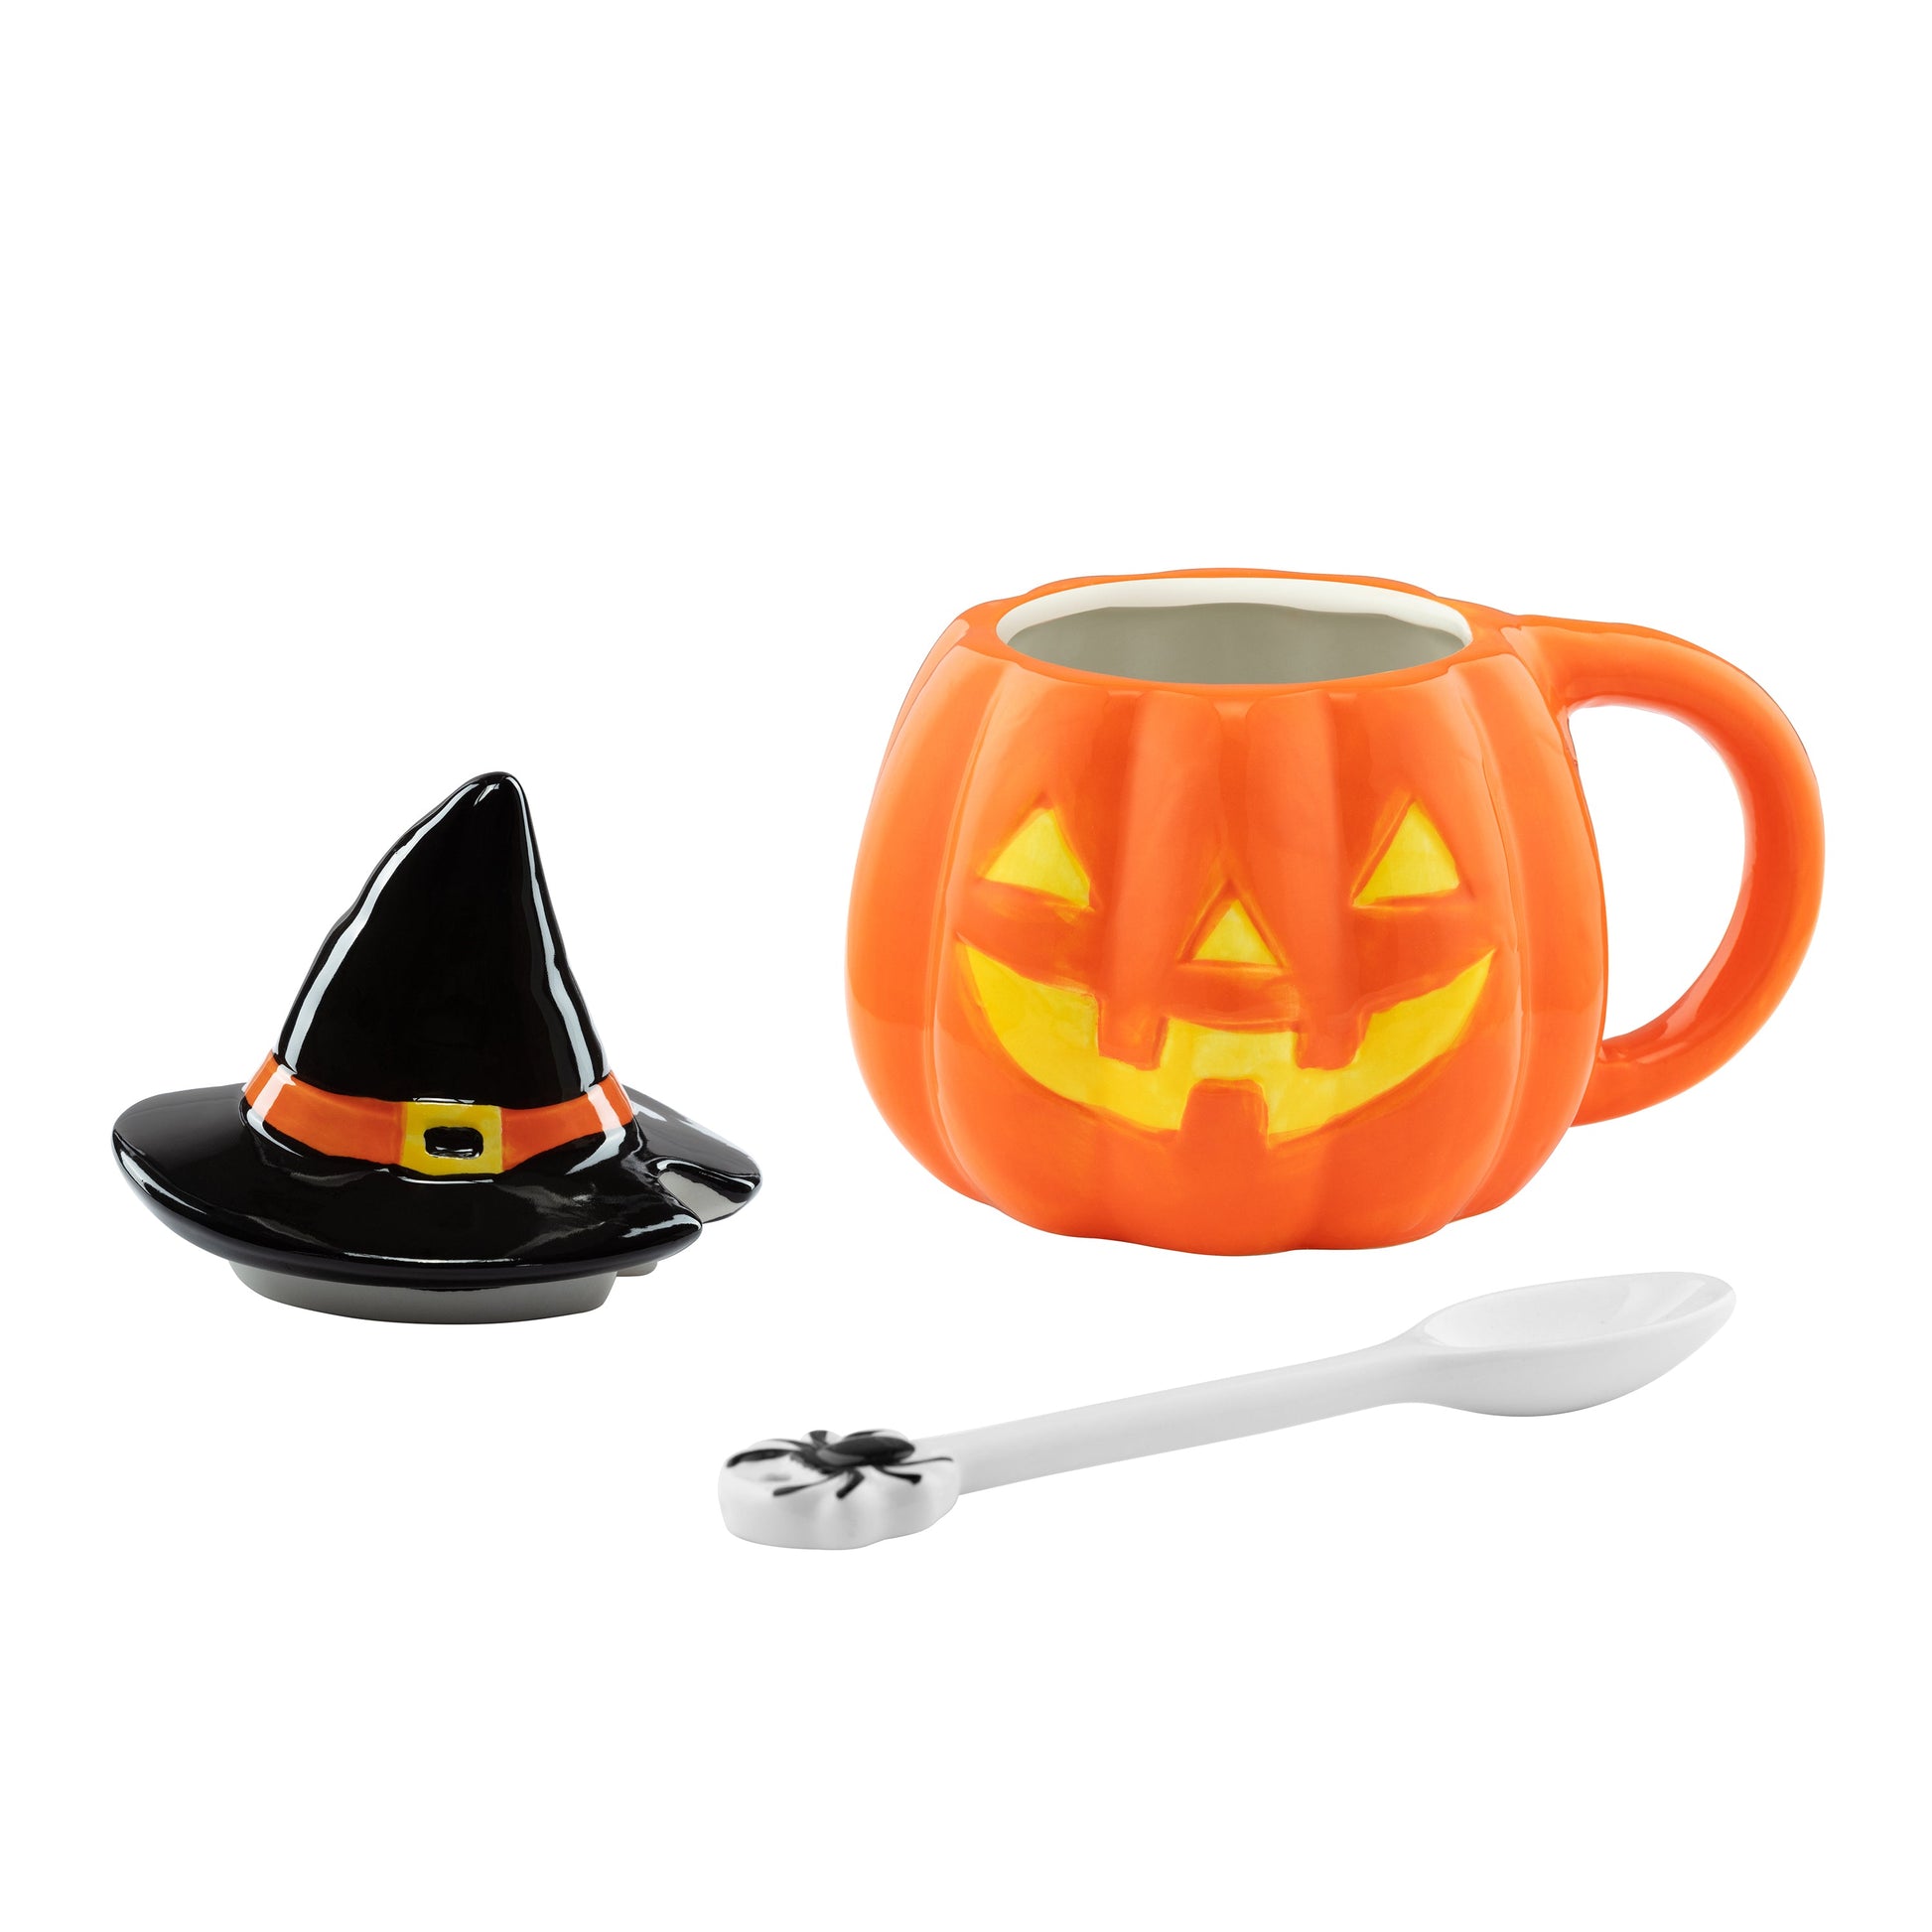 Mr. Halloween Lidded Jack-O-Lantern Mug with Spoon - Mr. Christmas